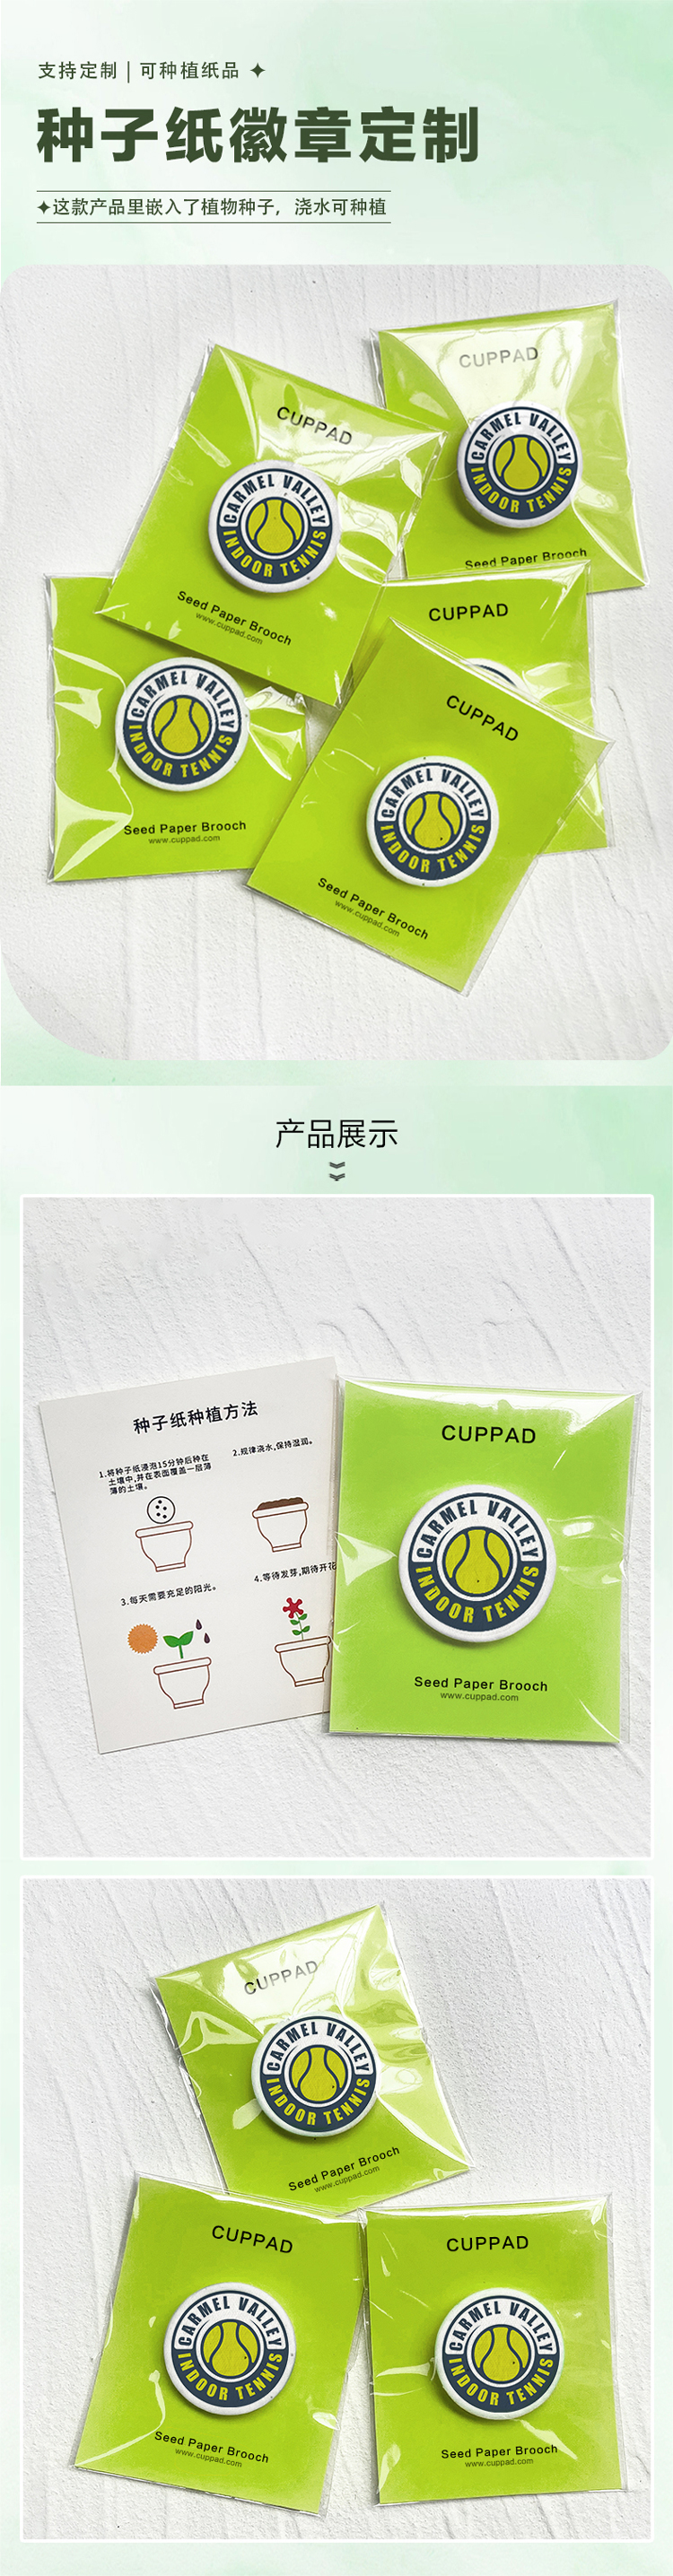 种子纸胸针-中文-3231.jpg